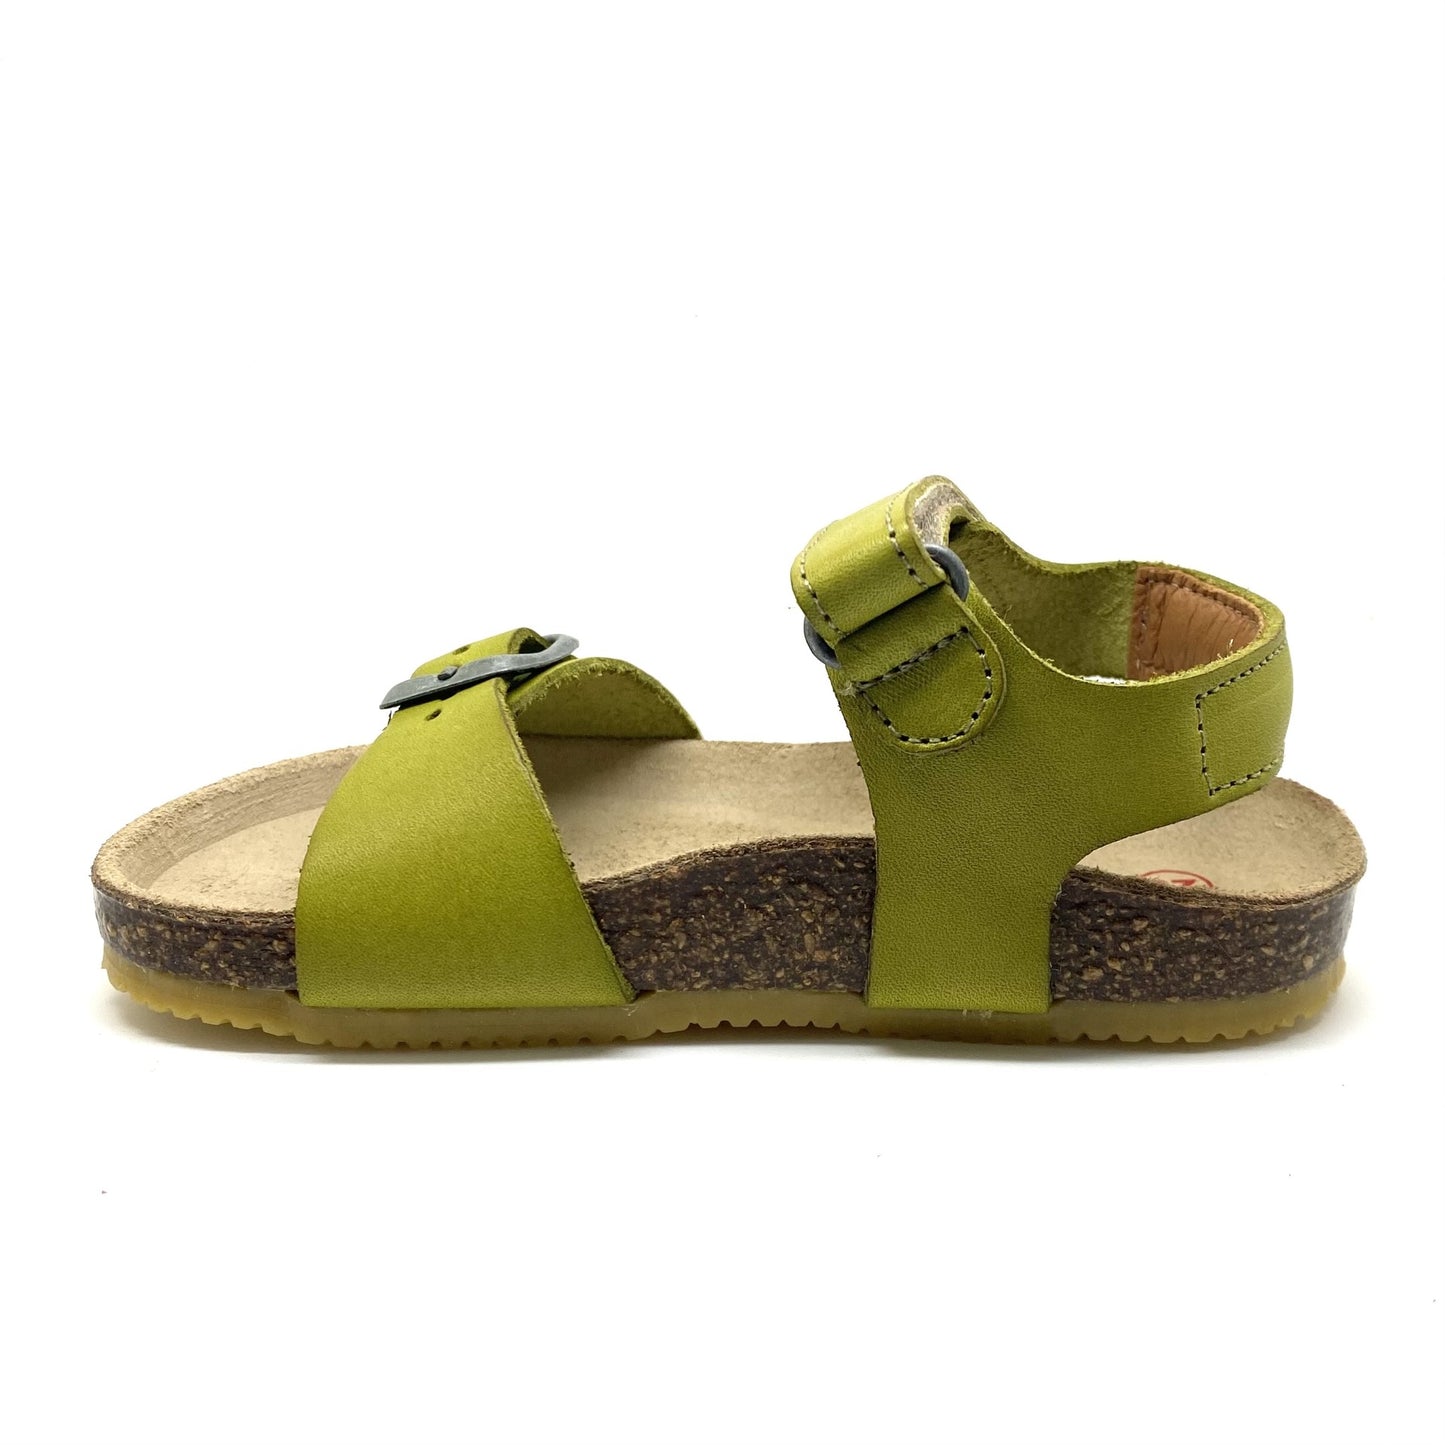 Lunella sandaal pistache kleur met voorgevormd voetbedje.